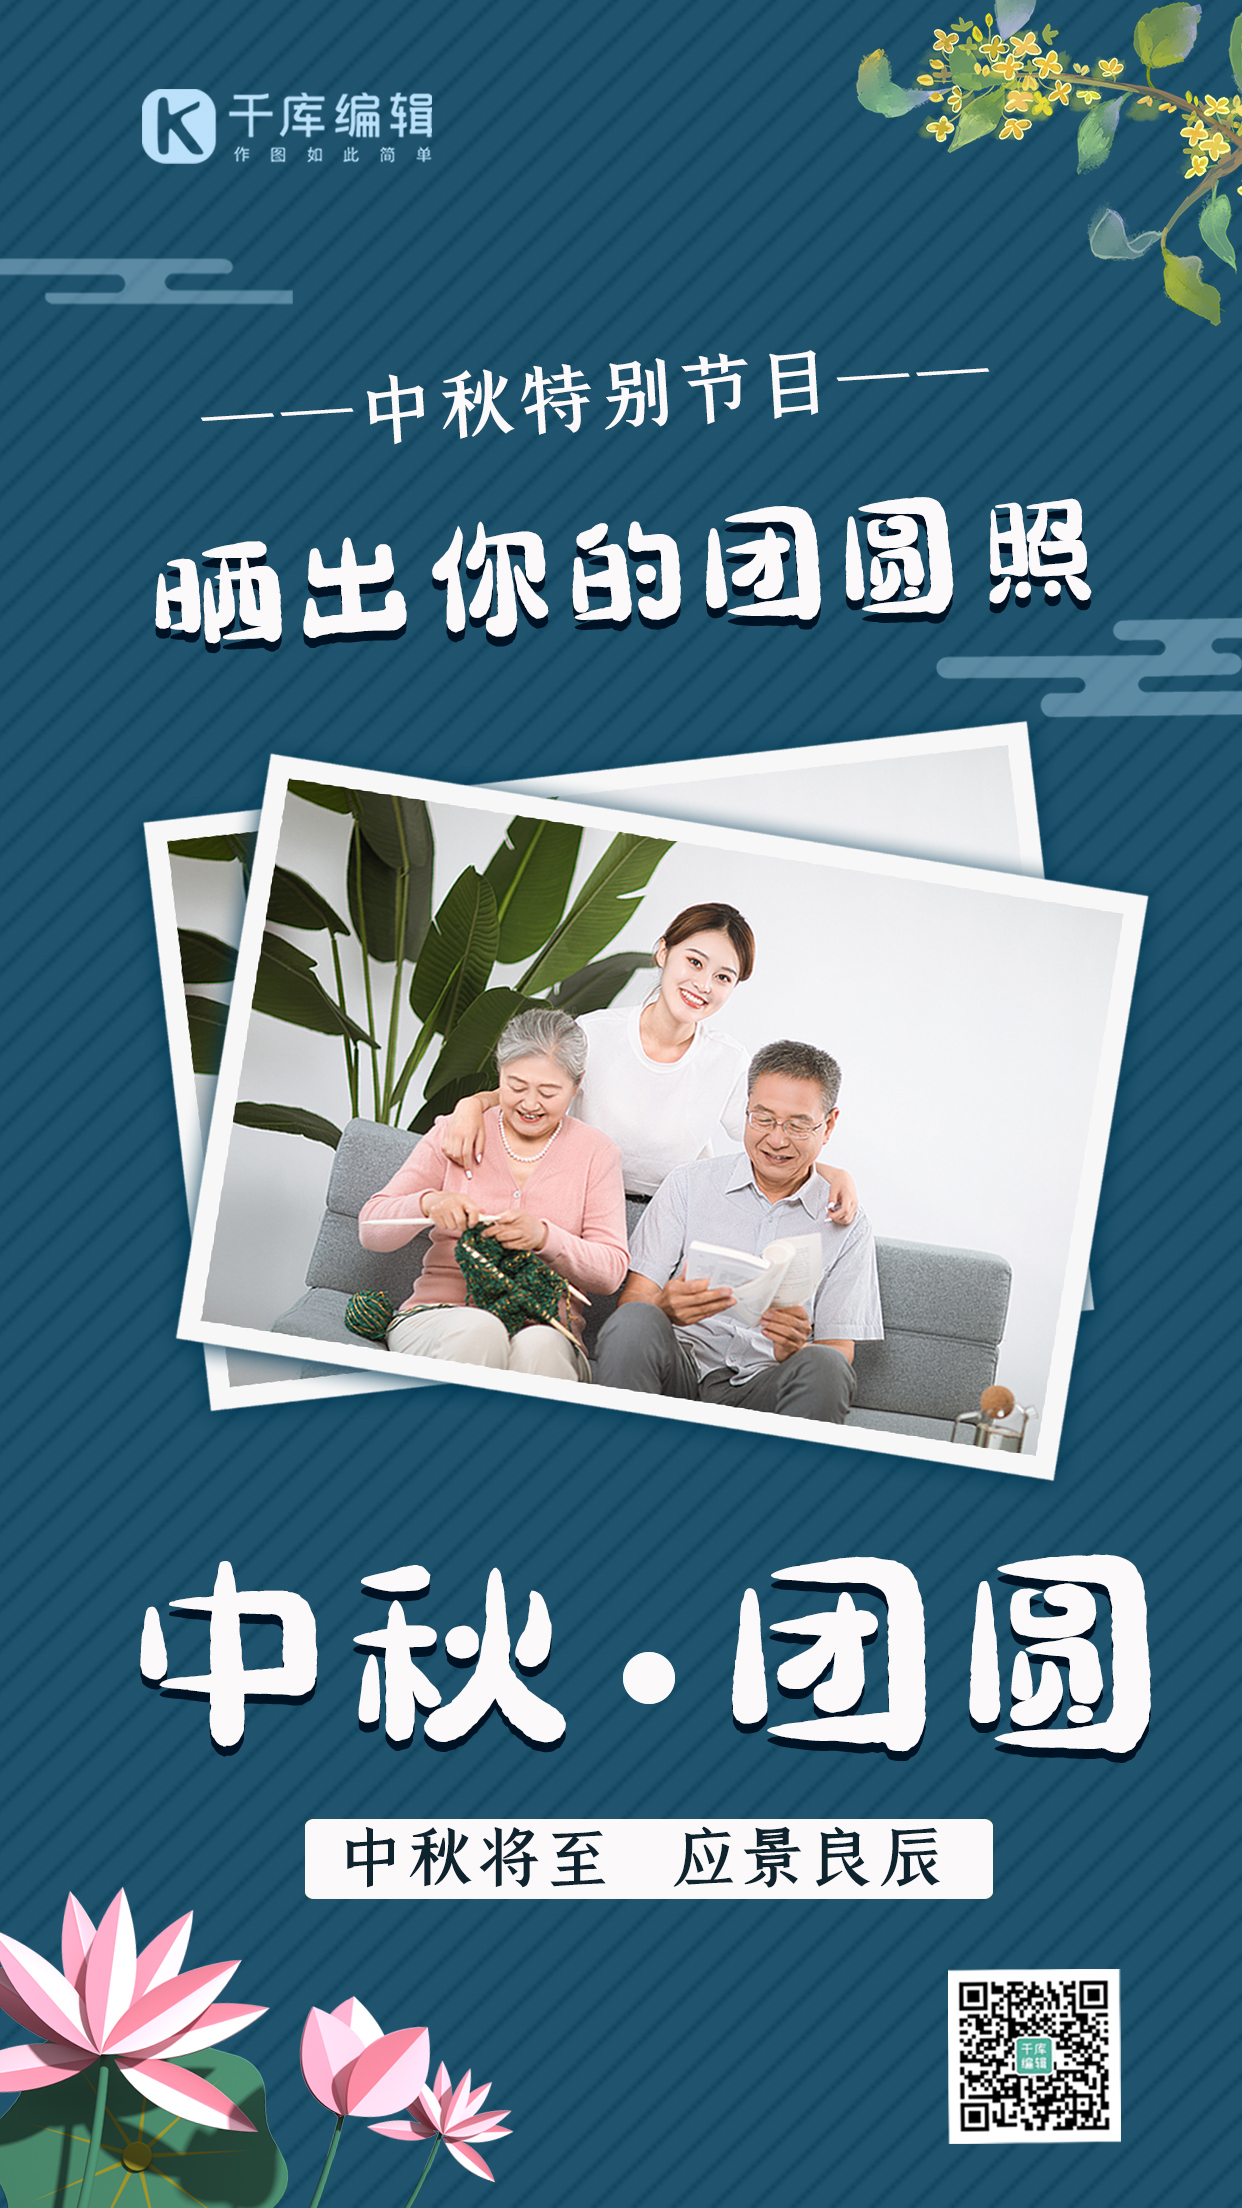 中秋节团圆一家团圆照片蓝色中国风手机海报图片